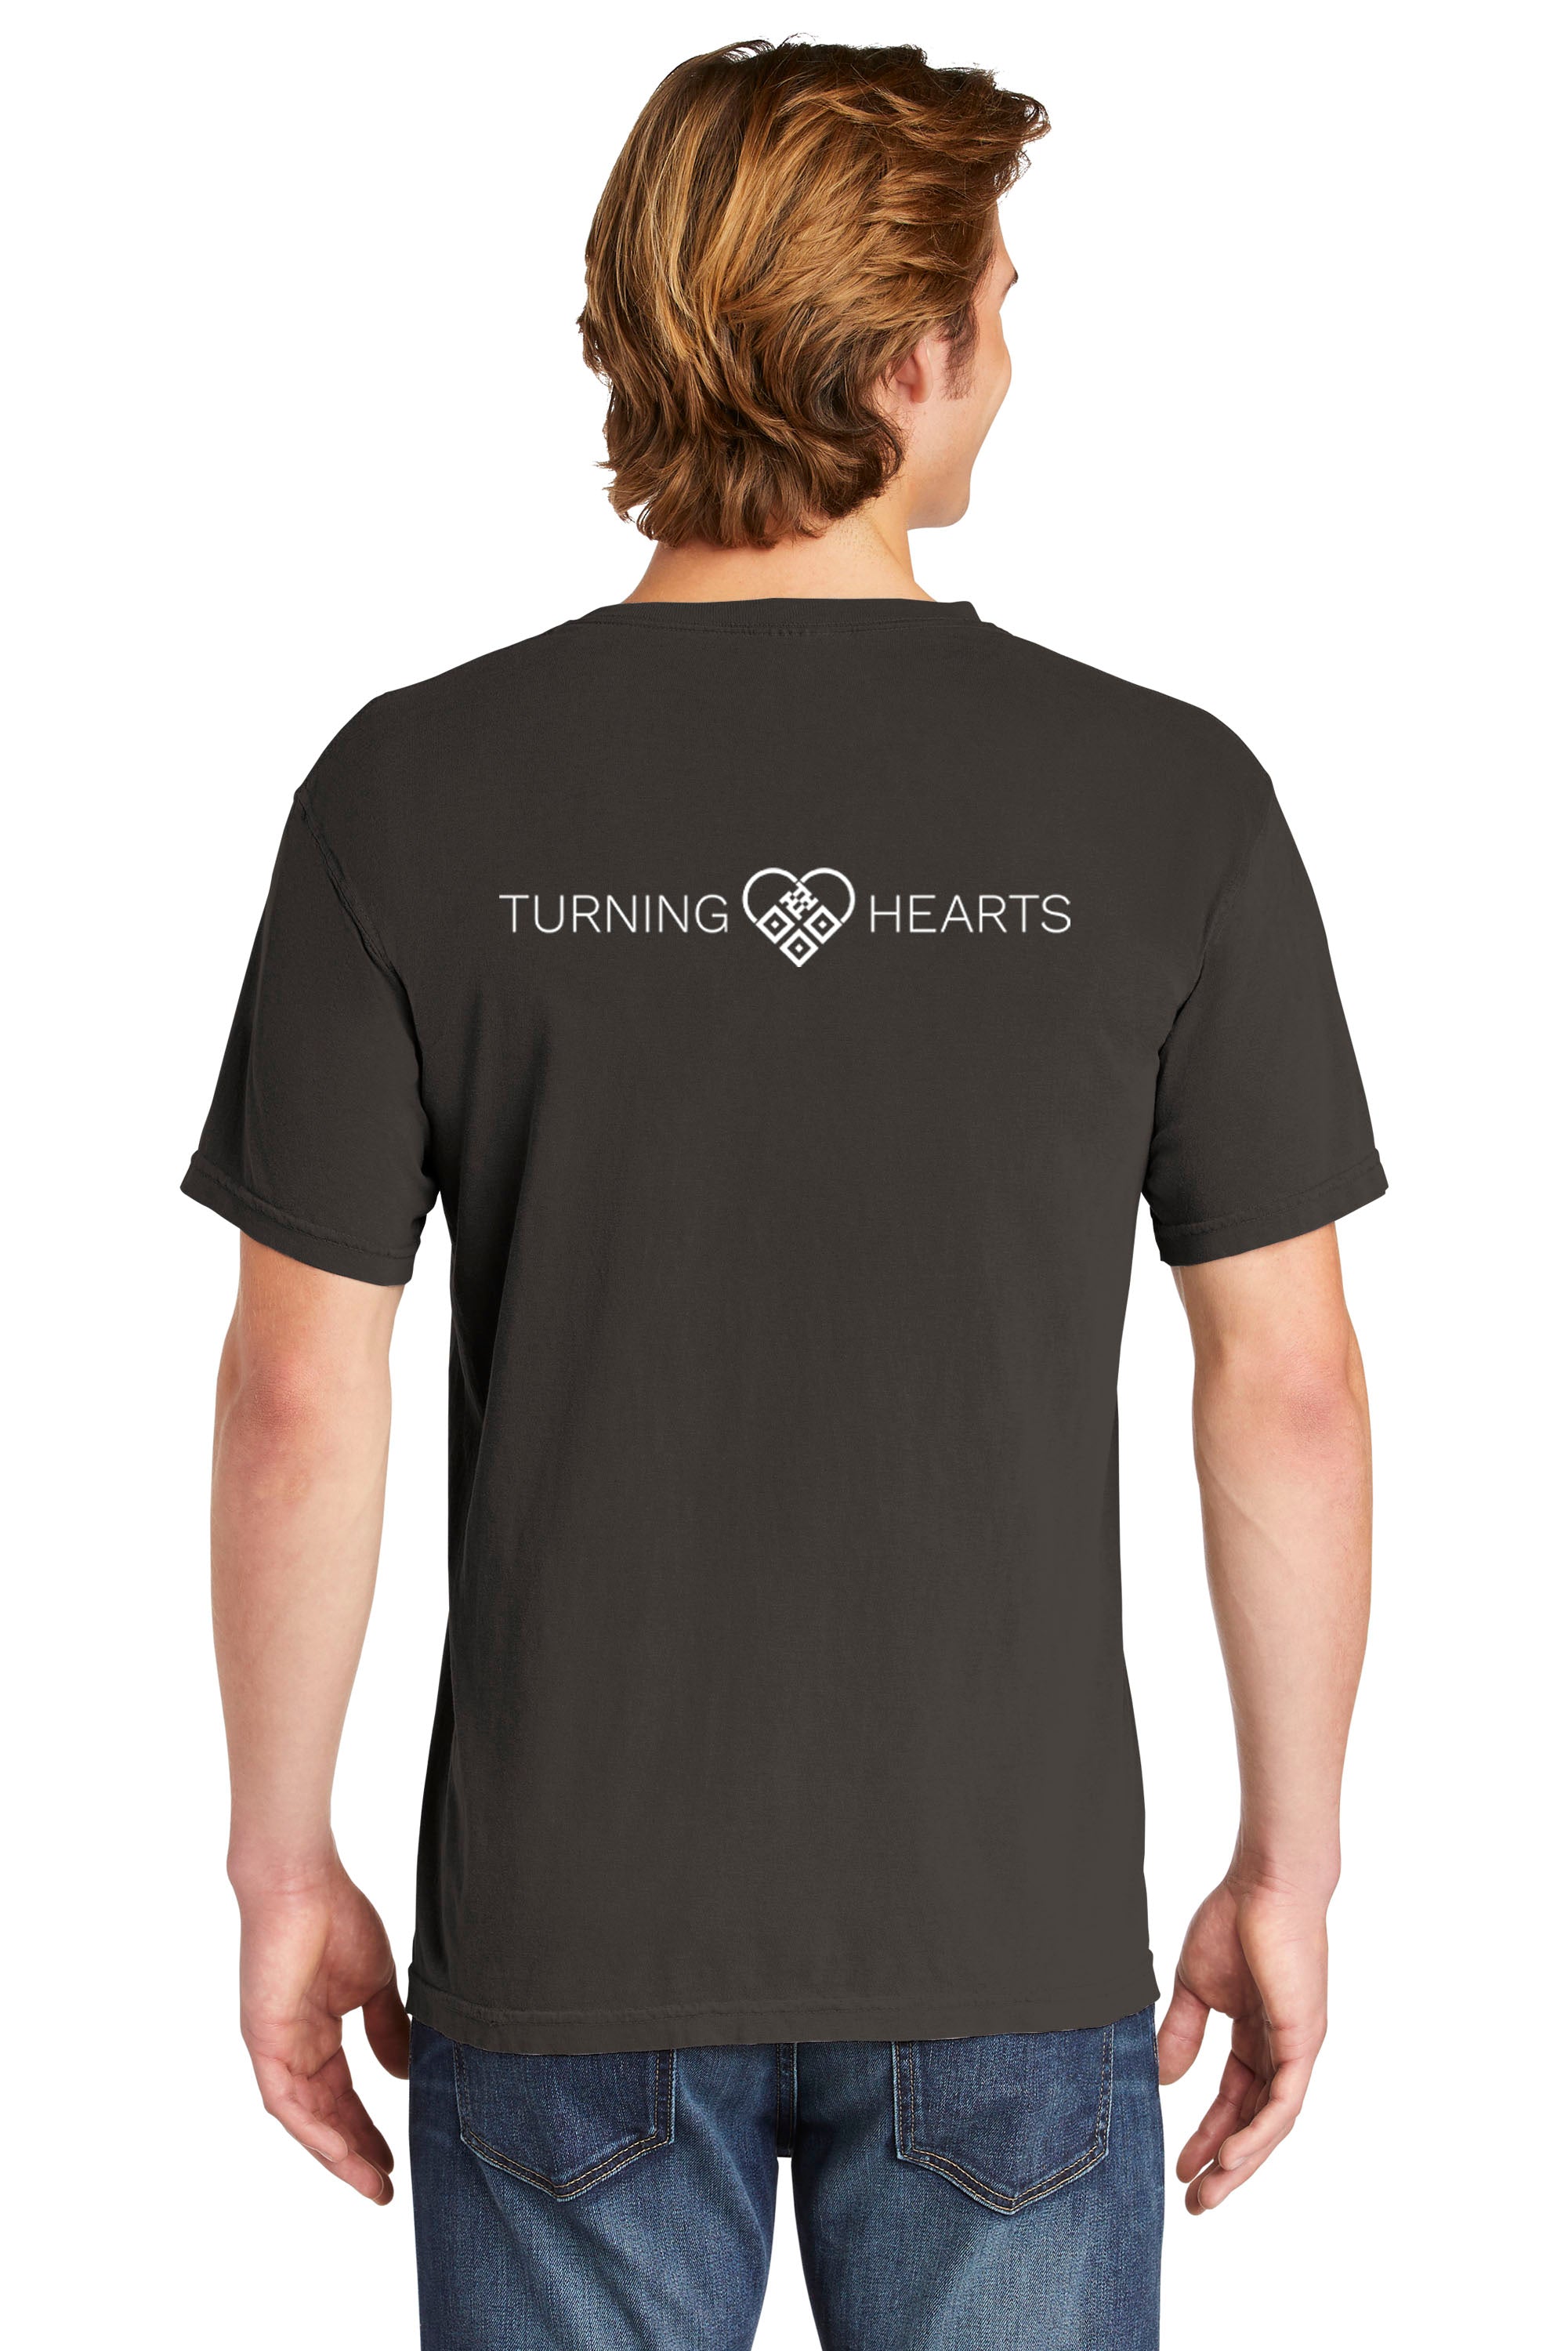 Turning Hearts (Heart Logo) T-Shirt